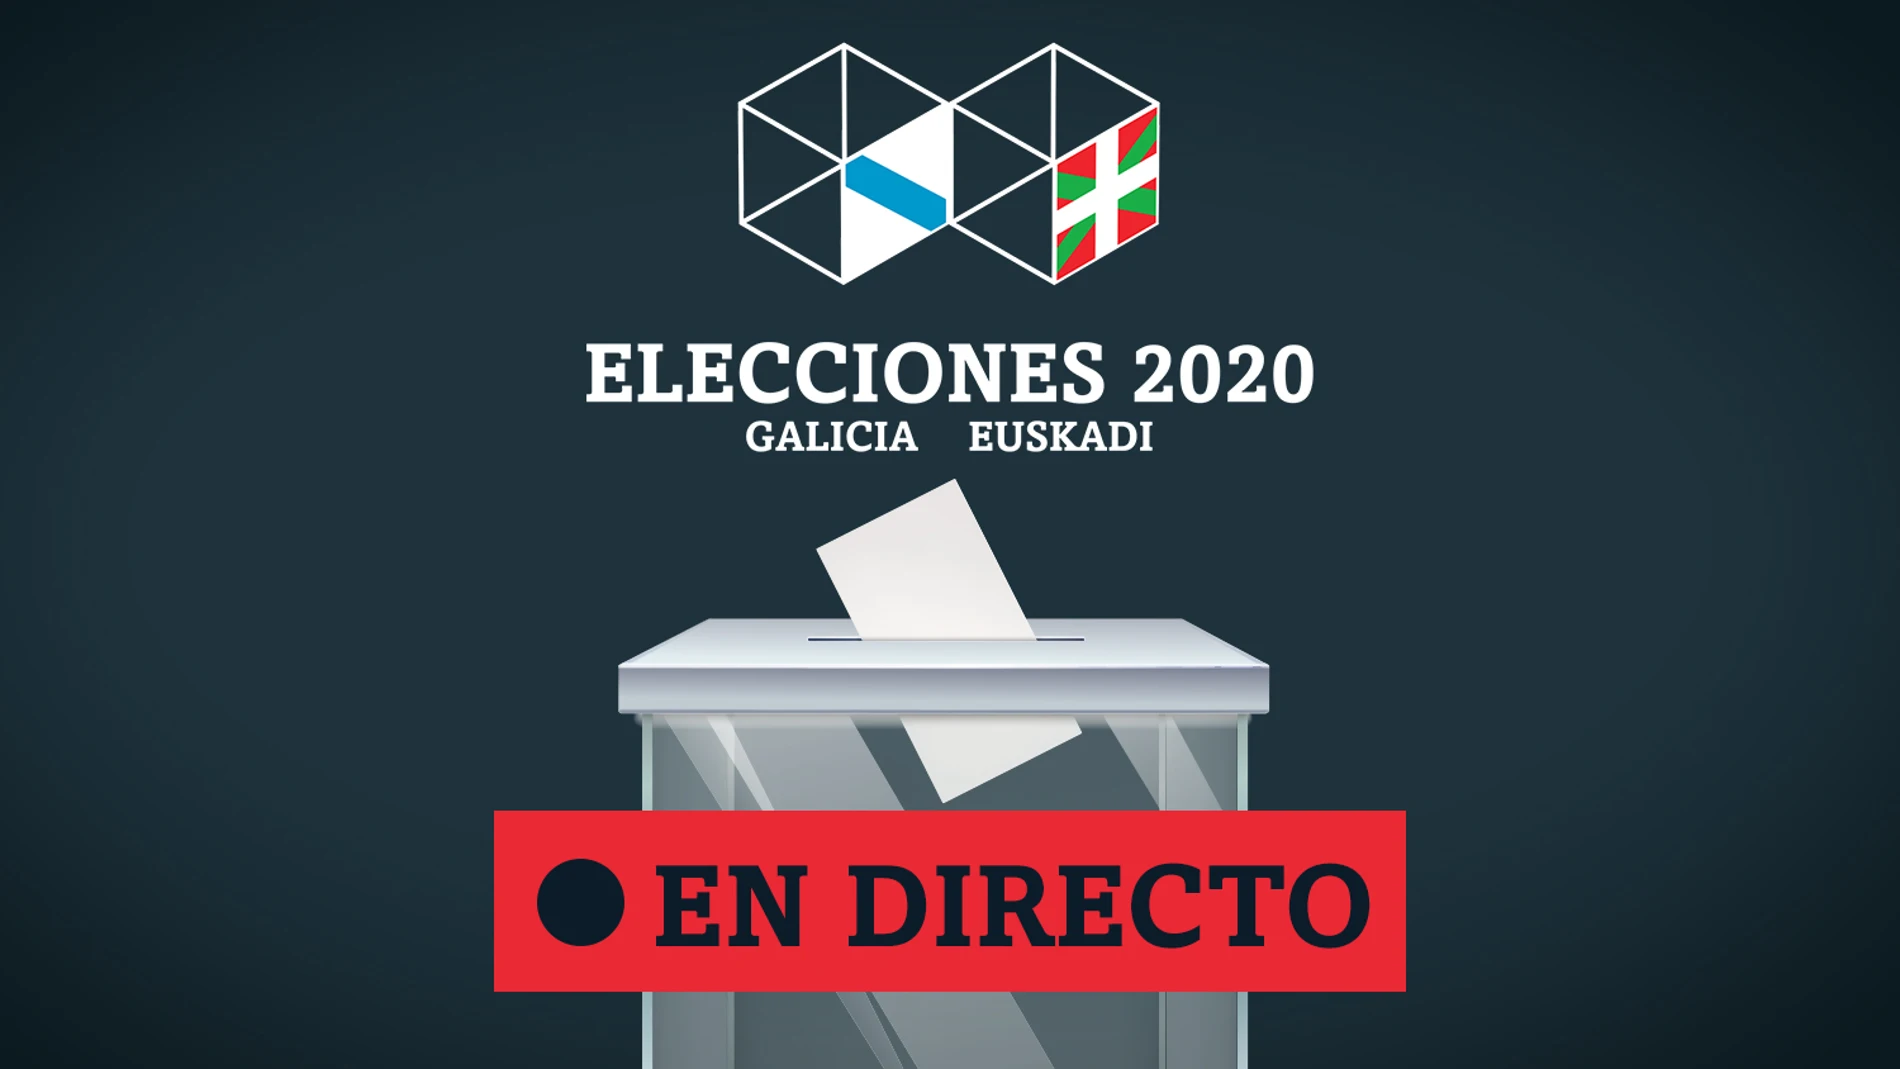 Elecciones País Vasco y Galicia 2020 | Resultados, escrutinio y noticias de última hora EN DIRECTO